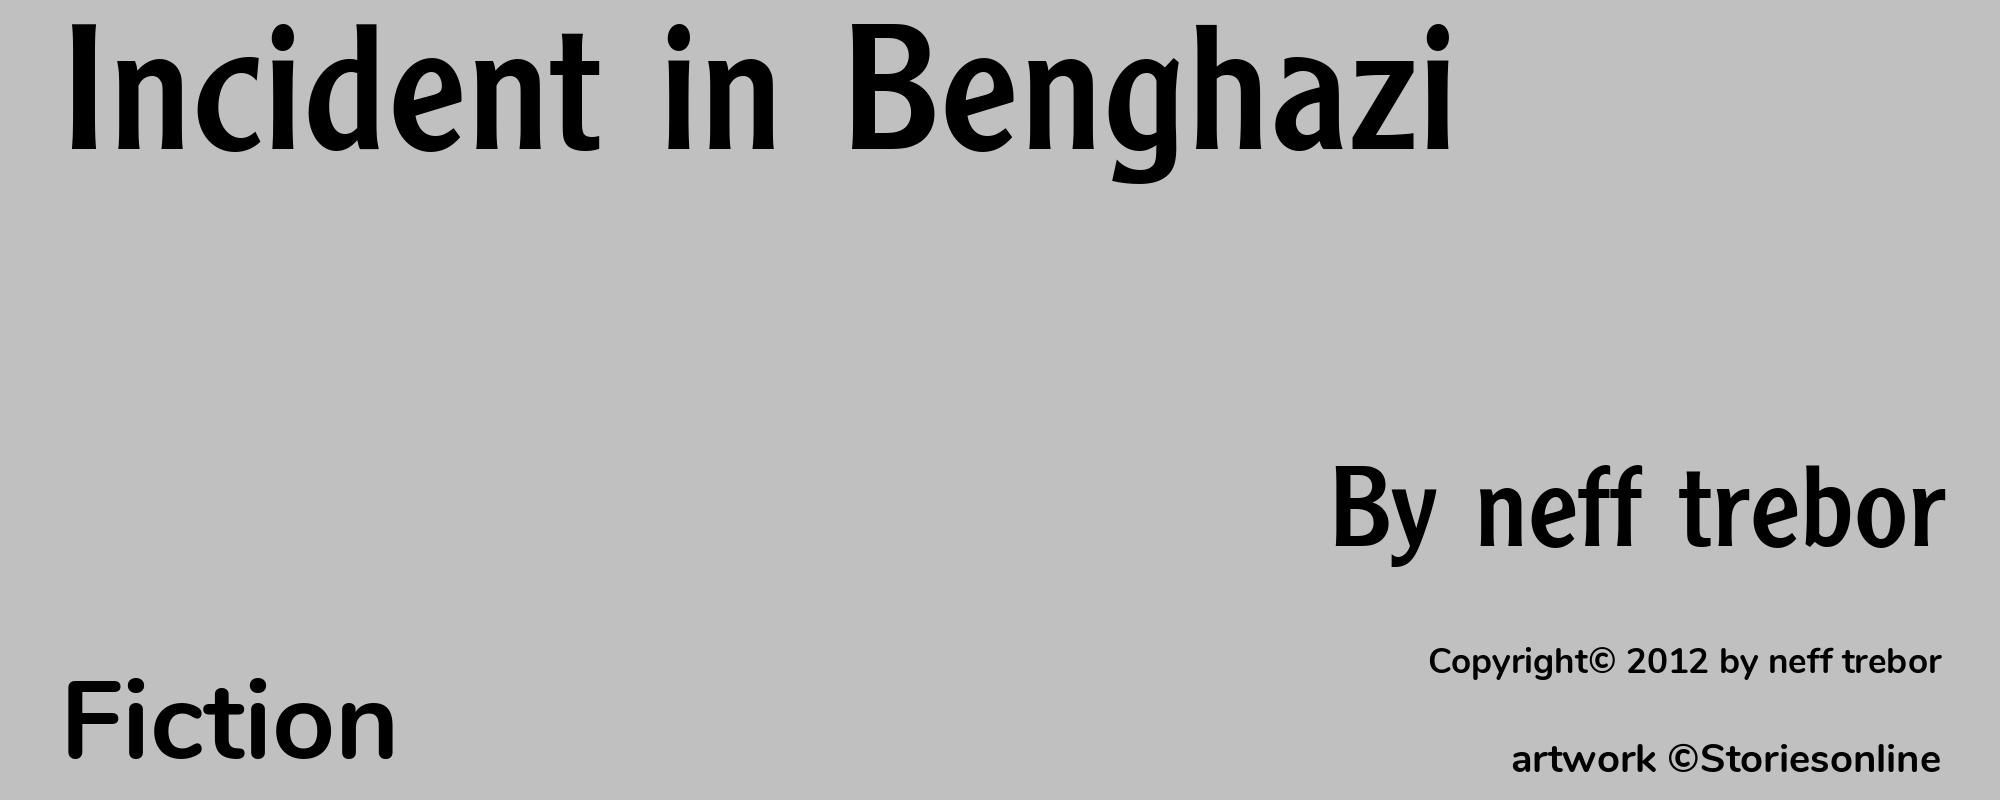 Incident in Benghazi - Cover